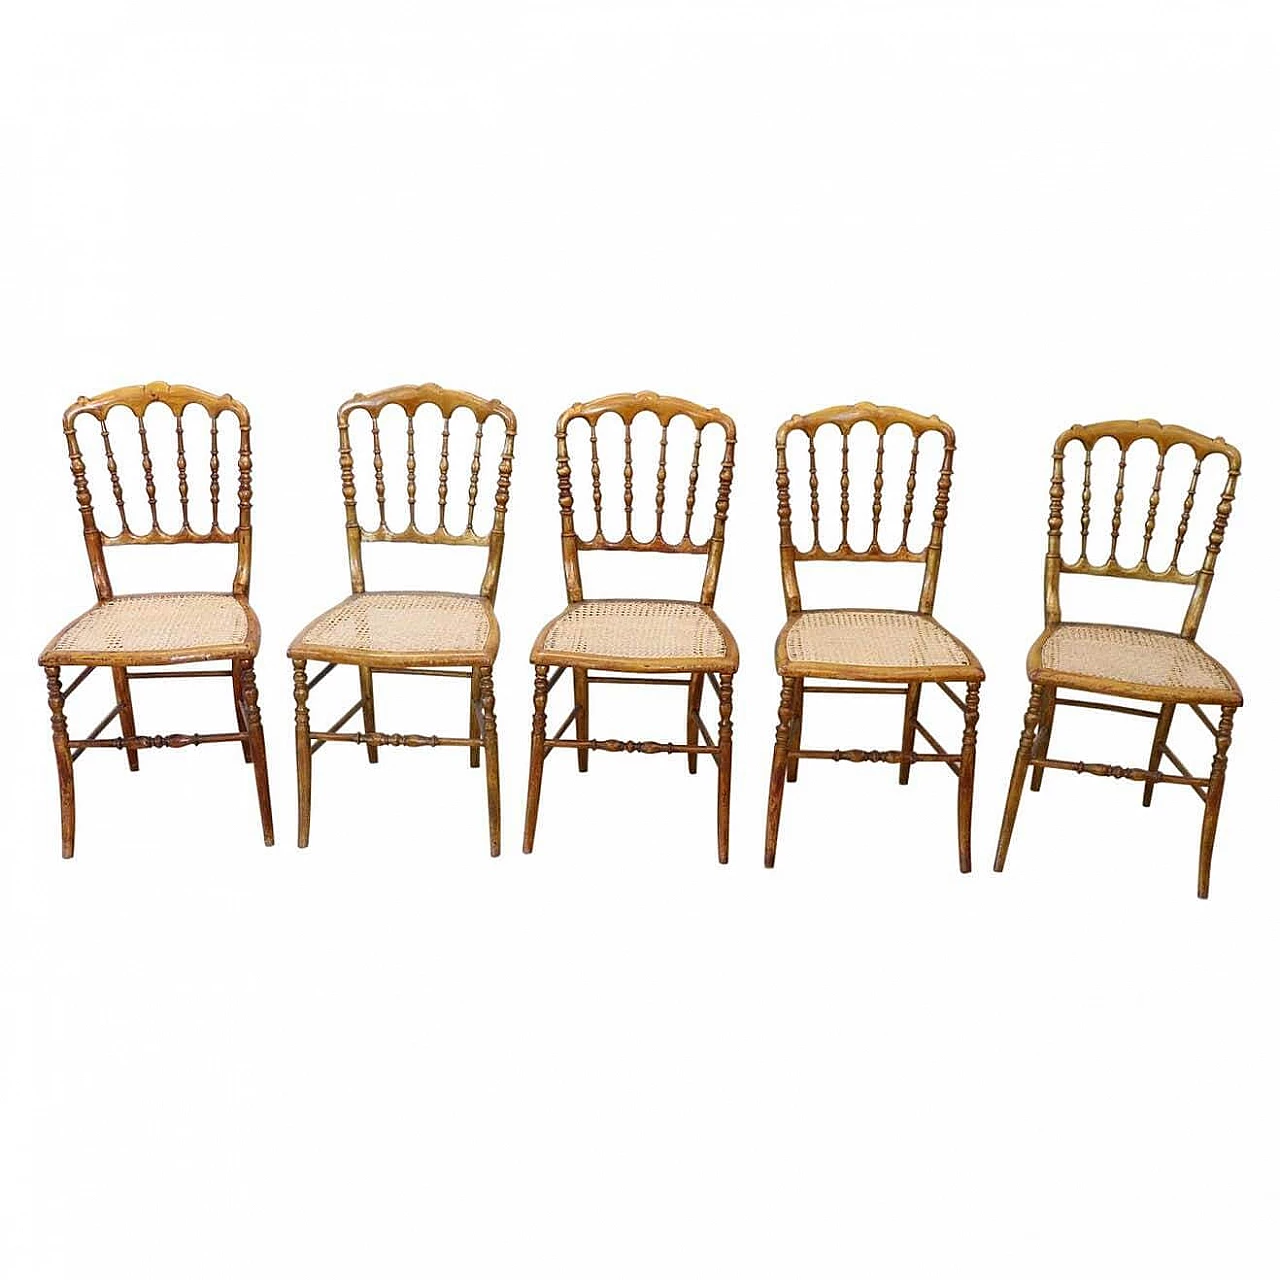 5 Vienna straw Chiavarine chairs, late 19th century 1311191